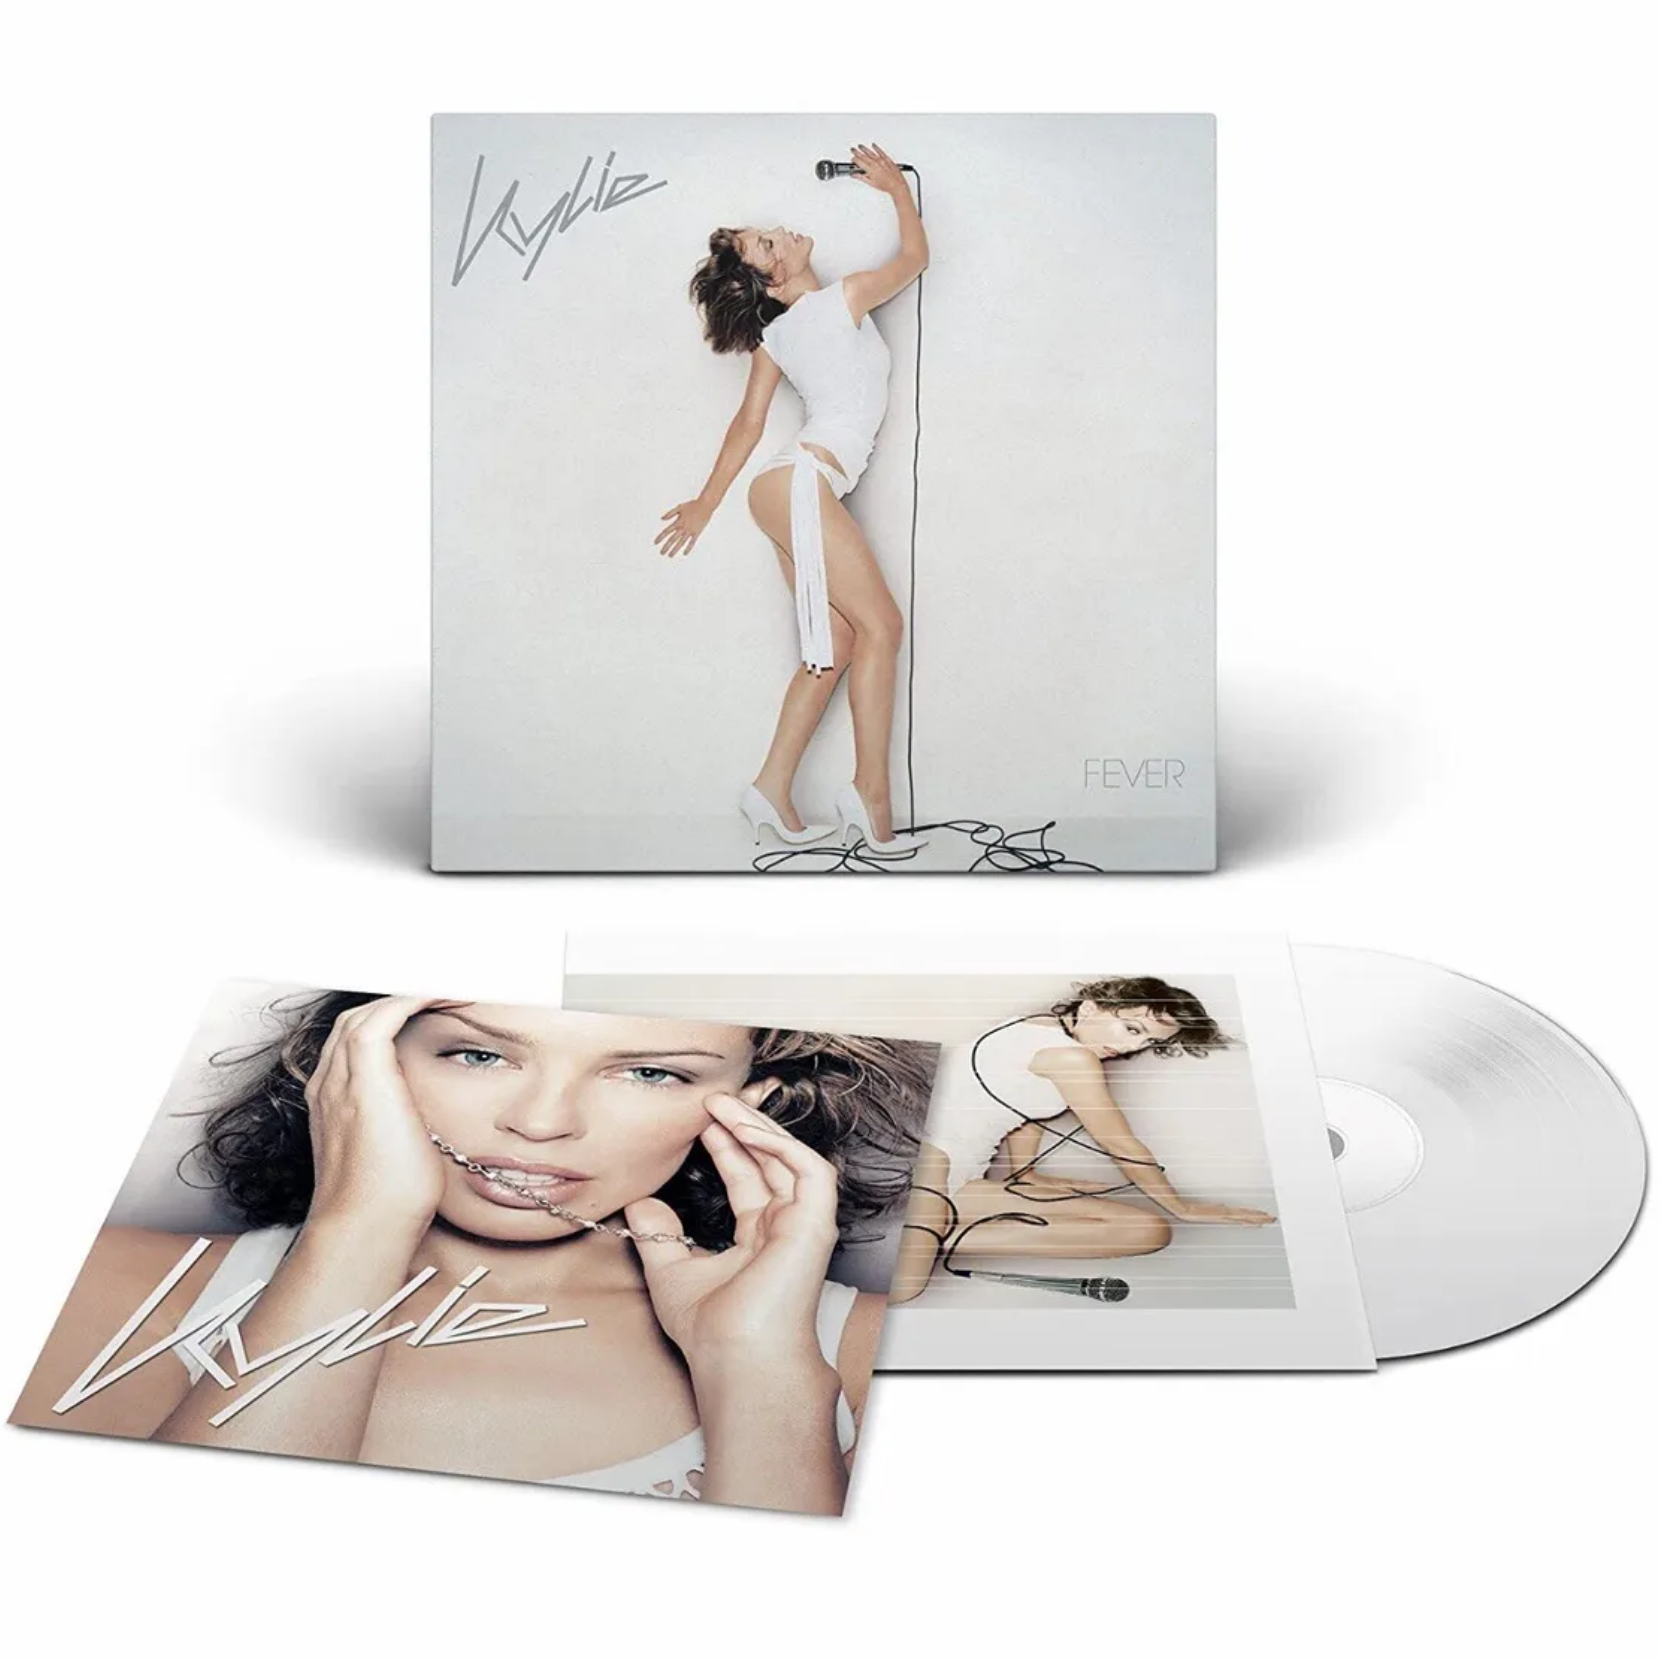 Kylie-Fever_White_Vinyl_National_Album_Day_Print